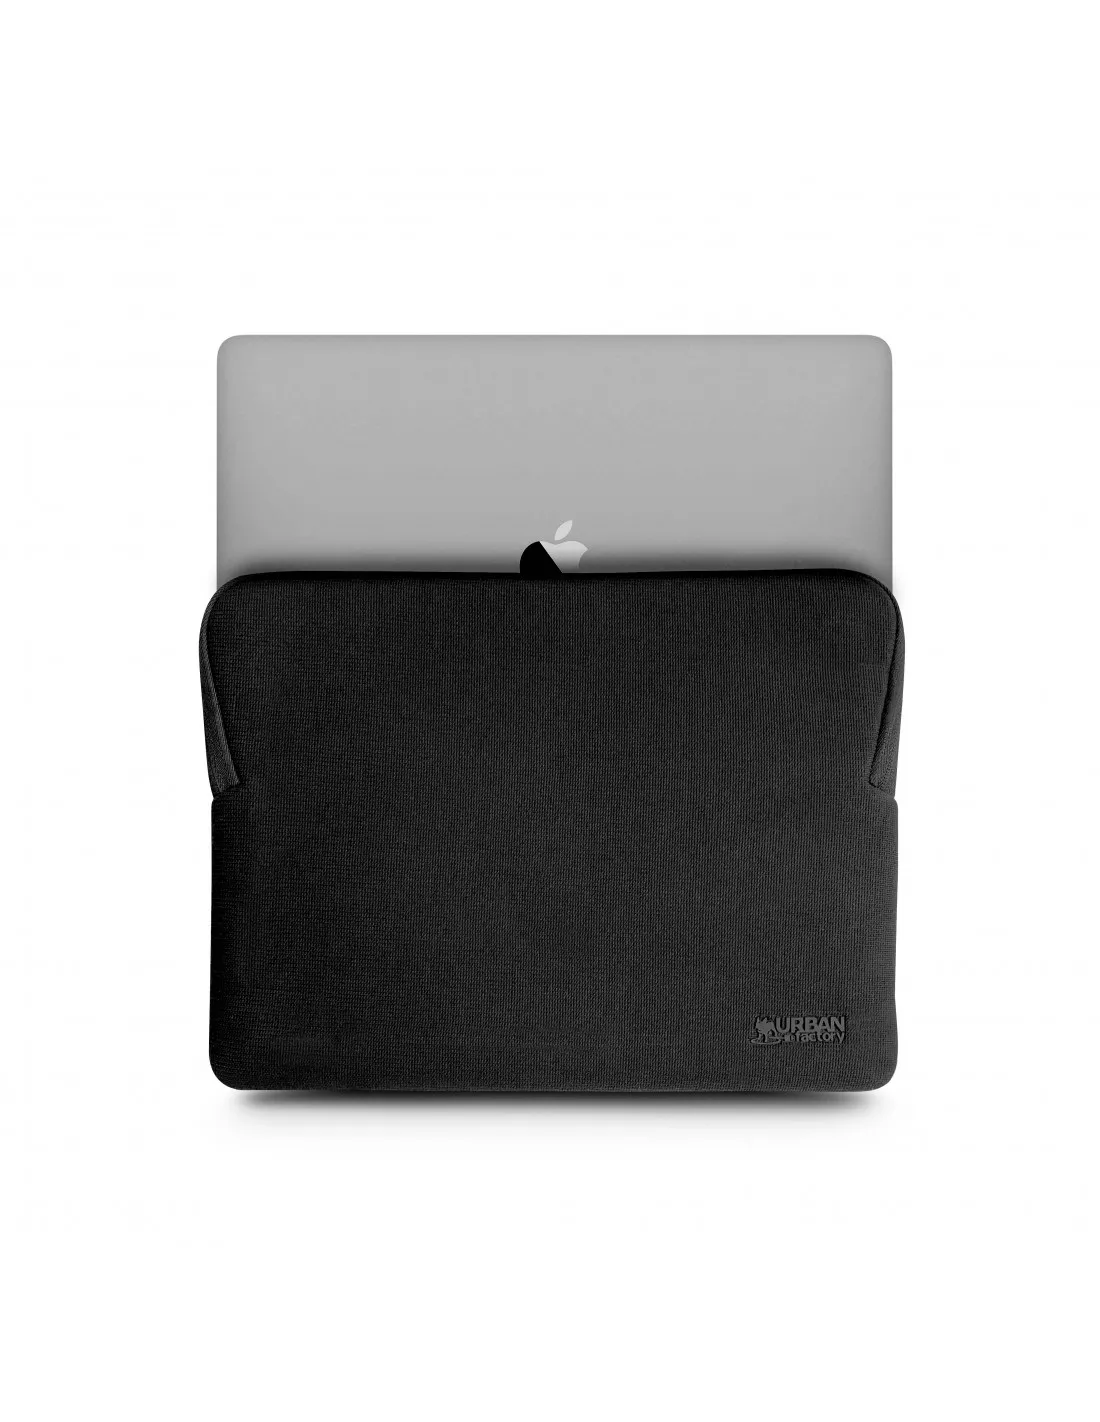 Achat URBAN FACTORY Memory Foam Sleeve Macbook Air&Pro et autres produits de la marque Urban Factory